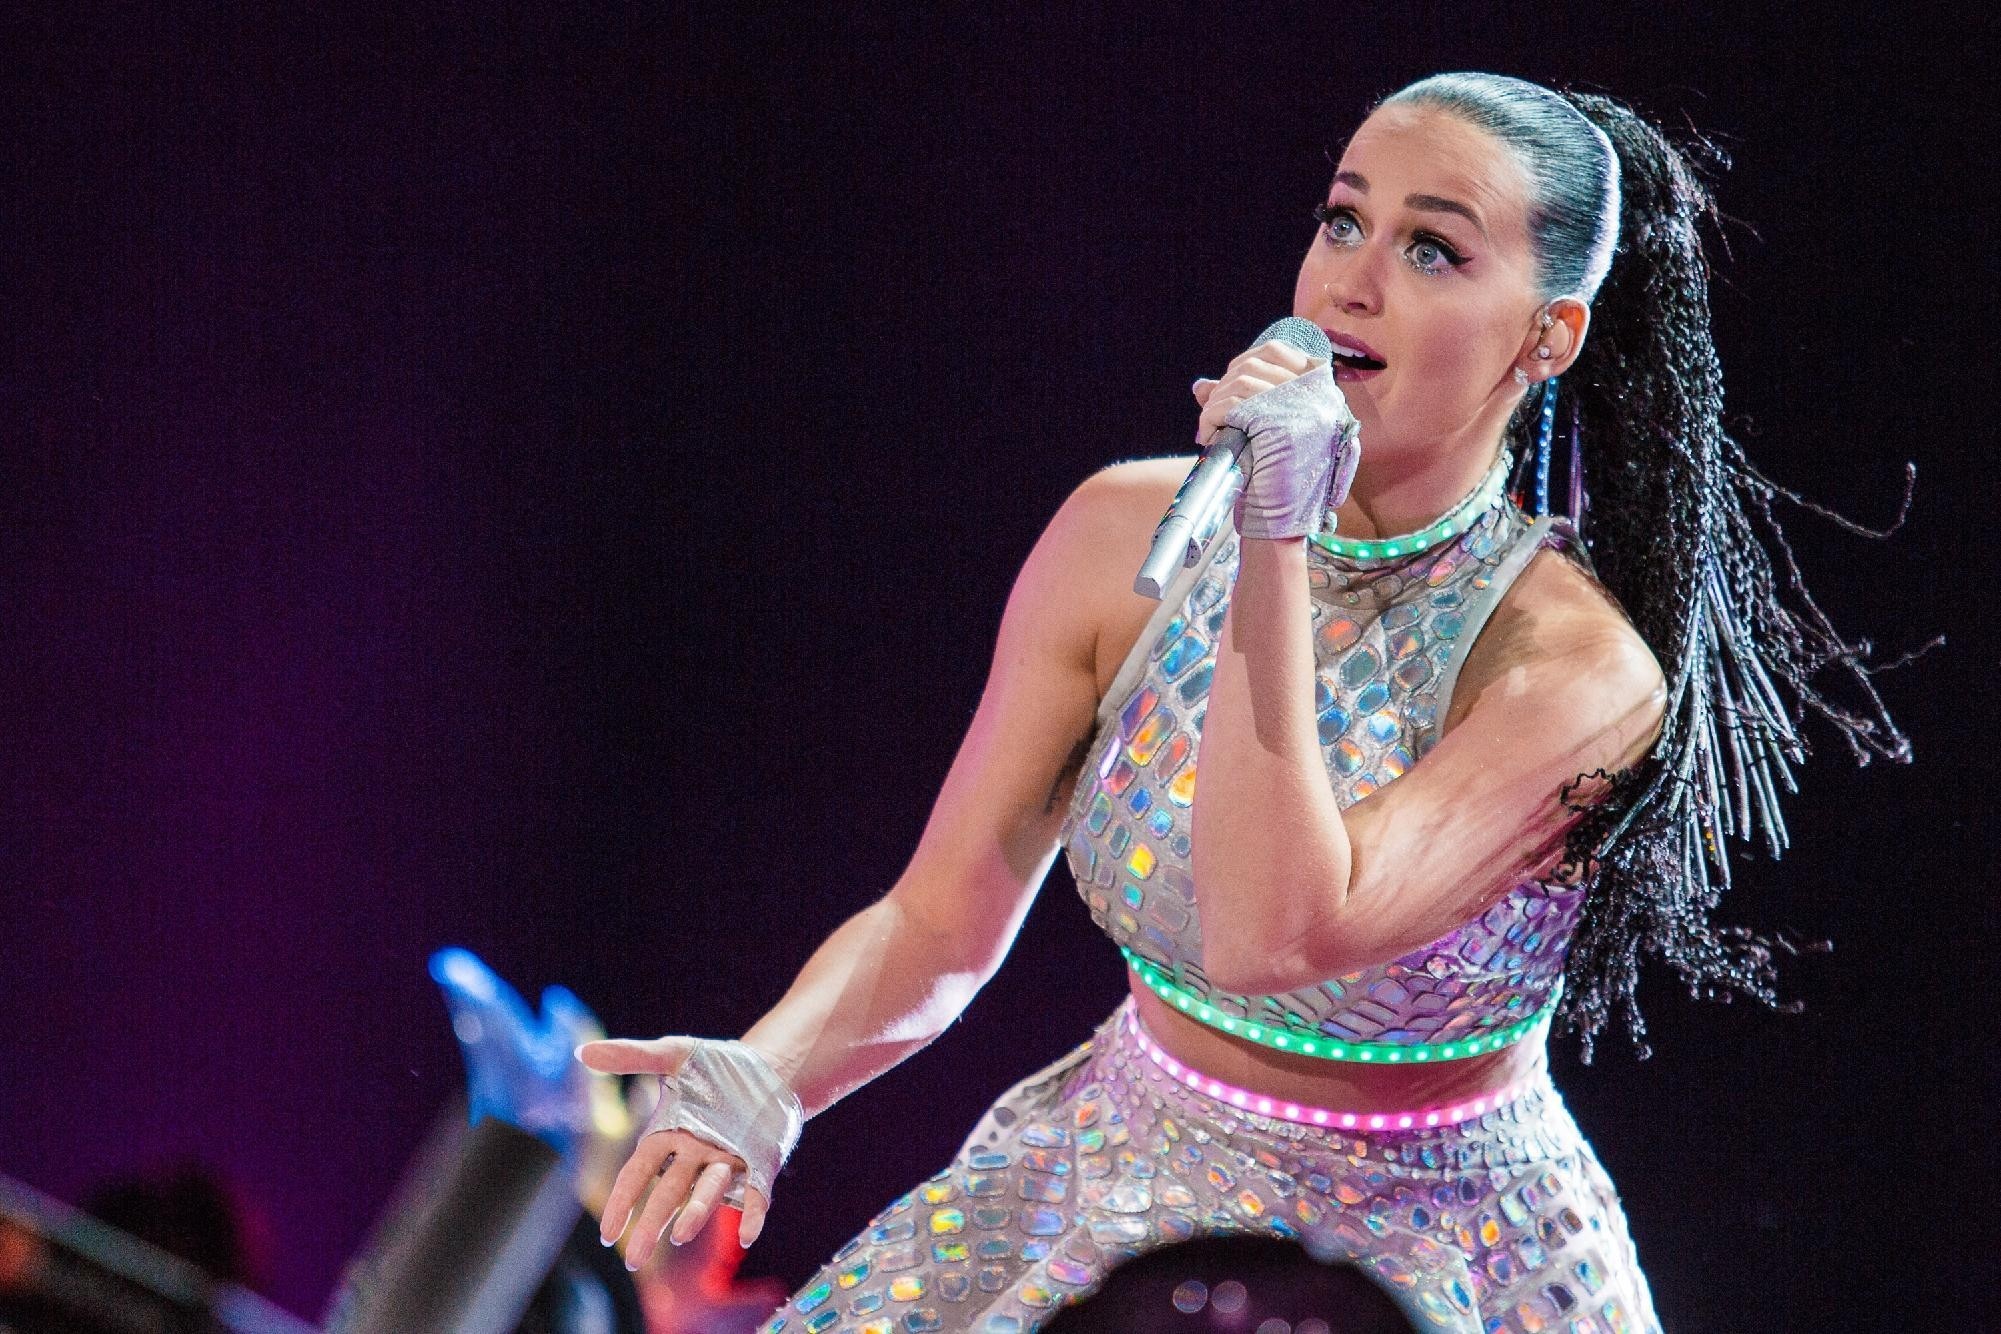 Katy Perry Women Singer Stage Shots Dreadlocks 2001x1334